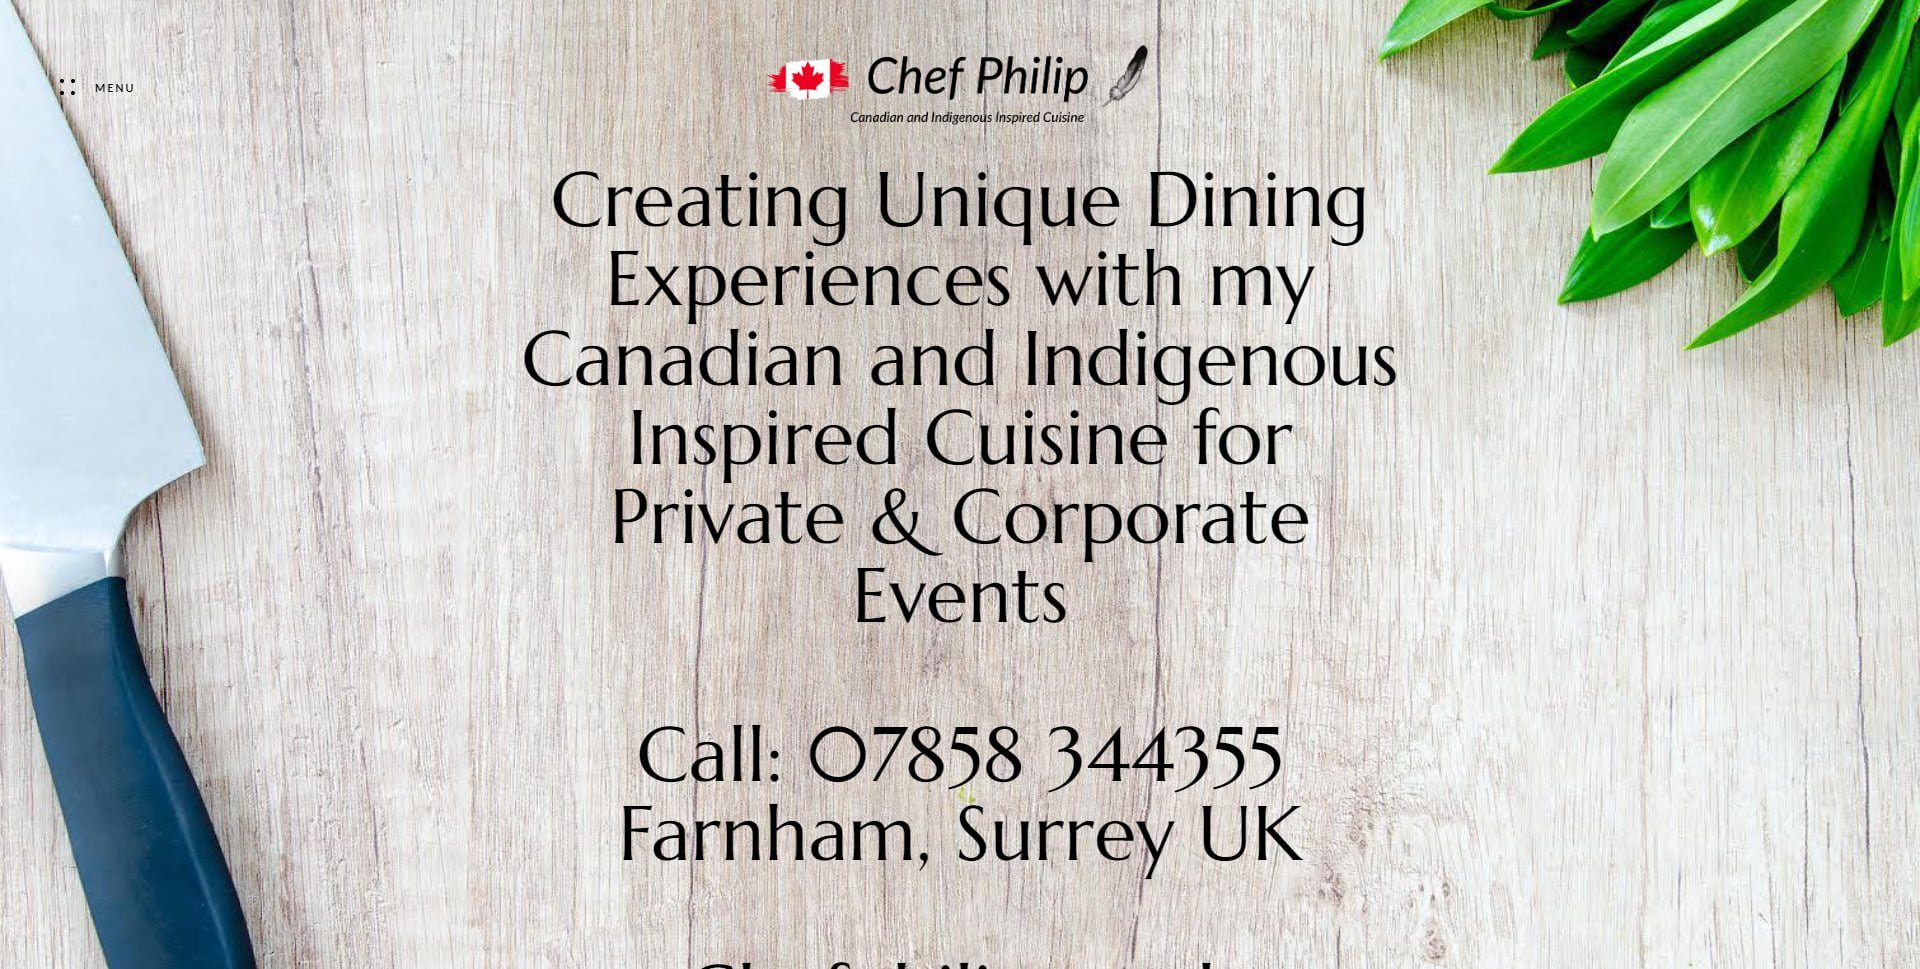 Chef Phillip Website Design